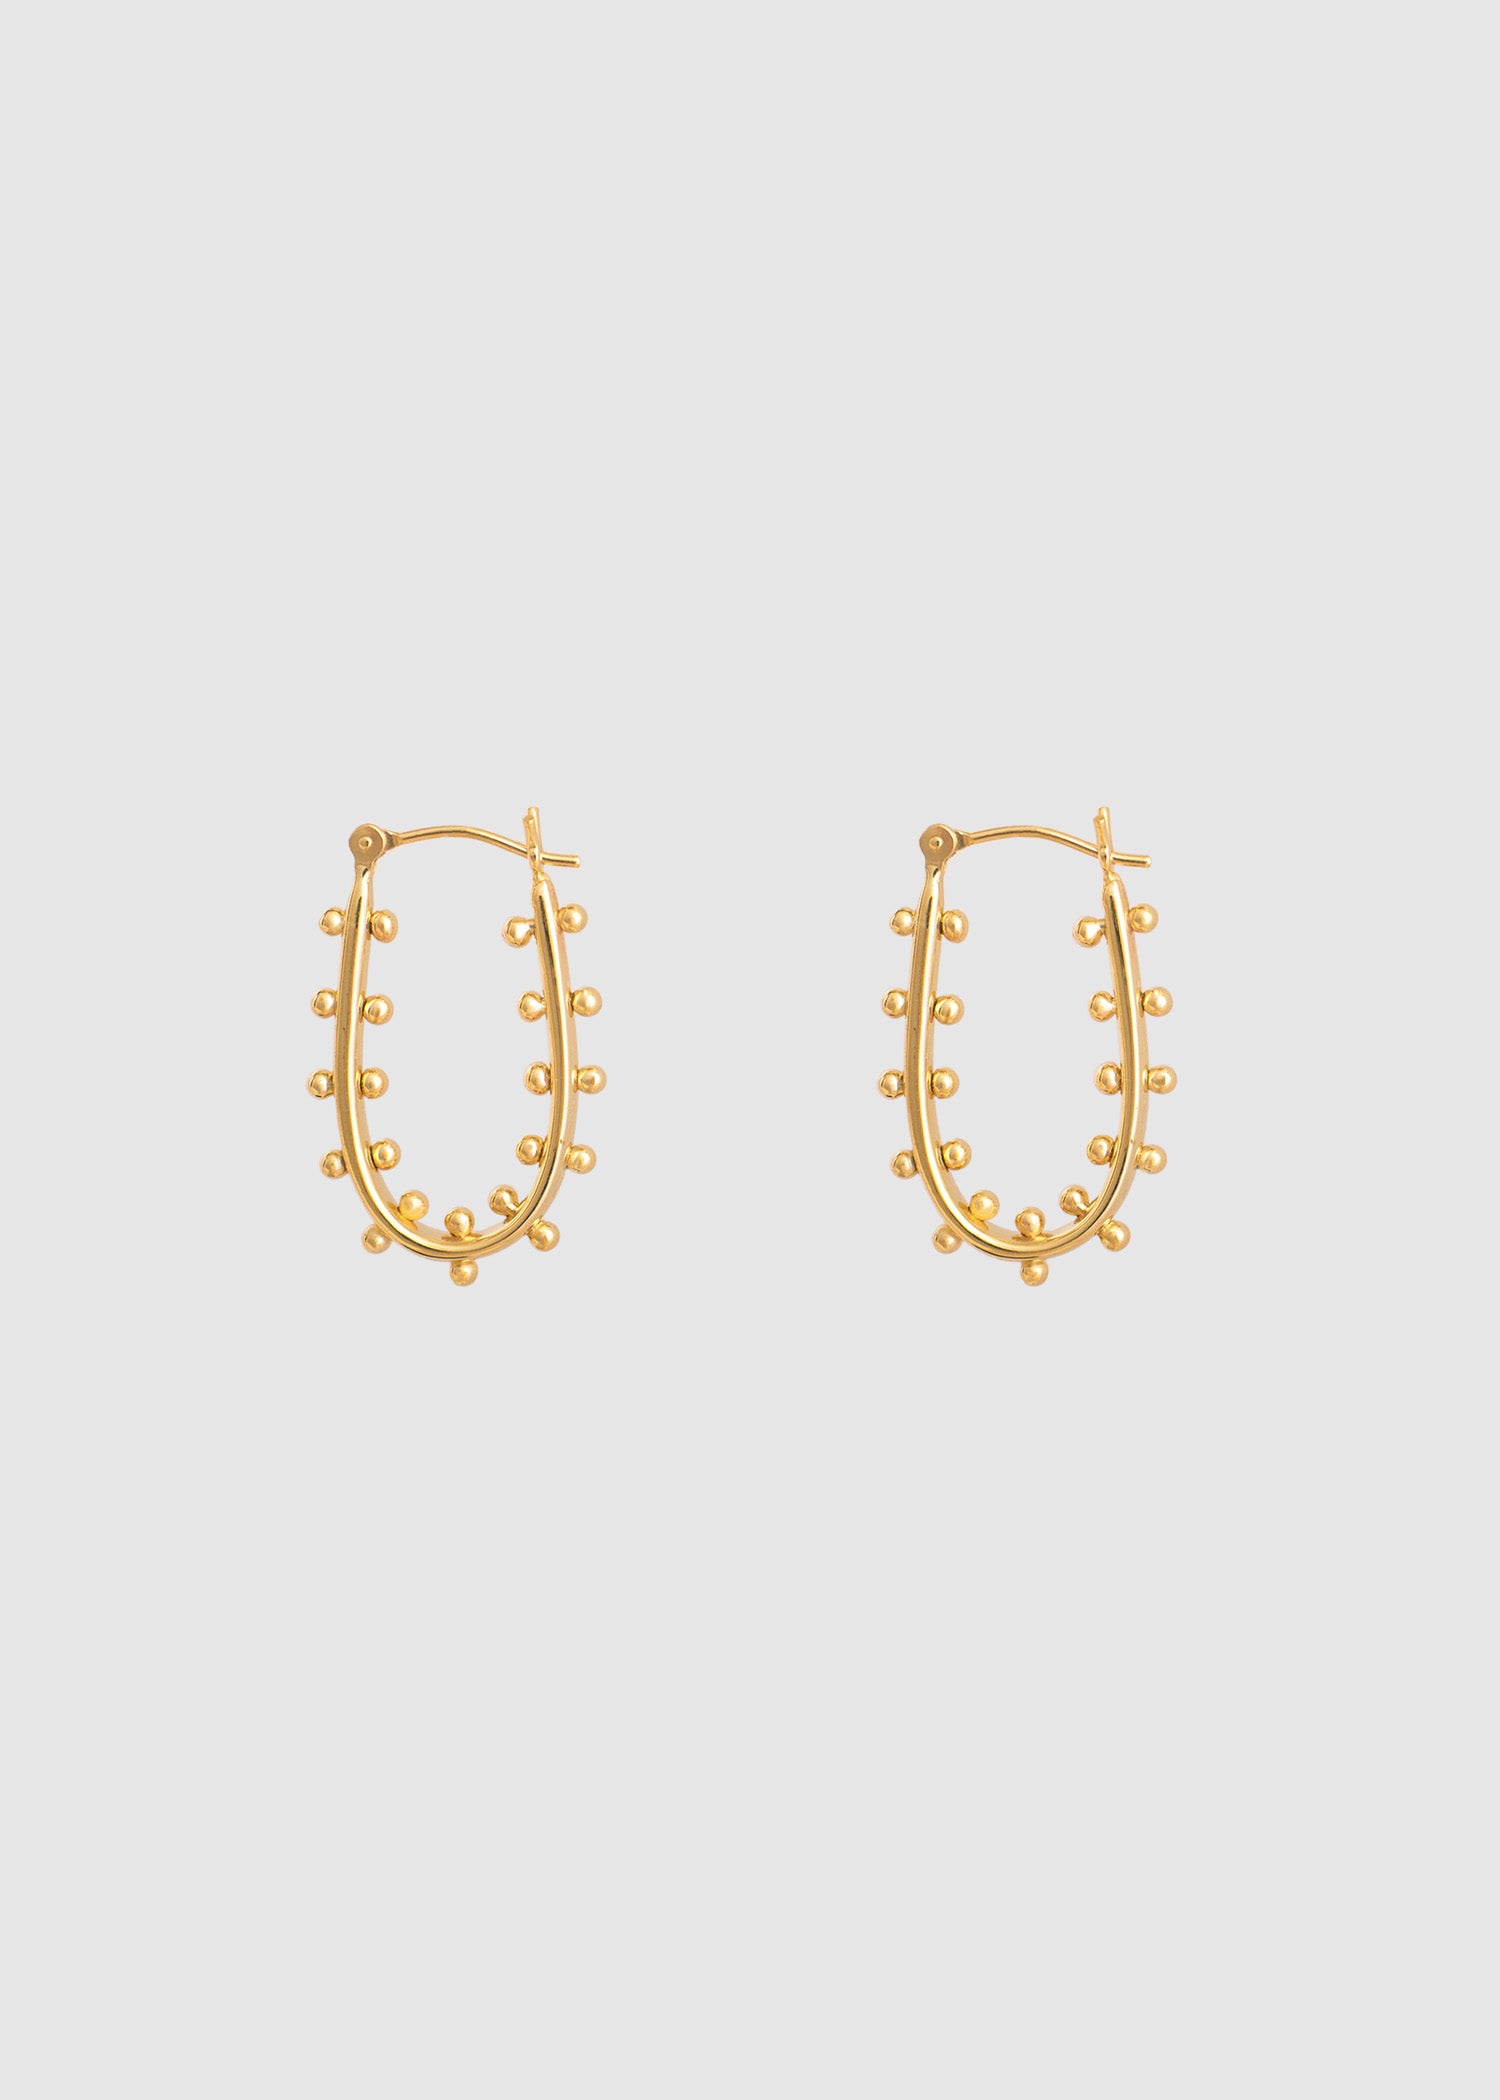 In Stock | Medium Kumi Earrings